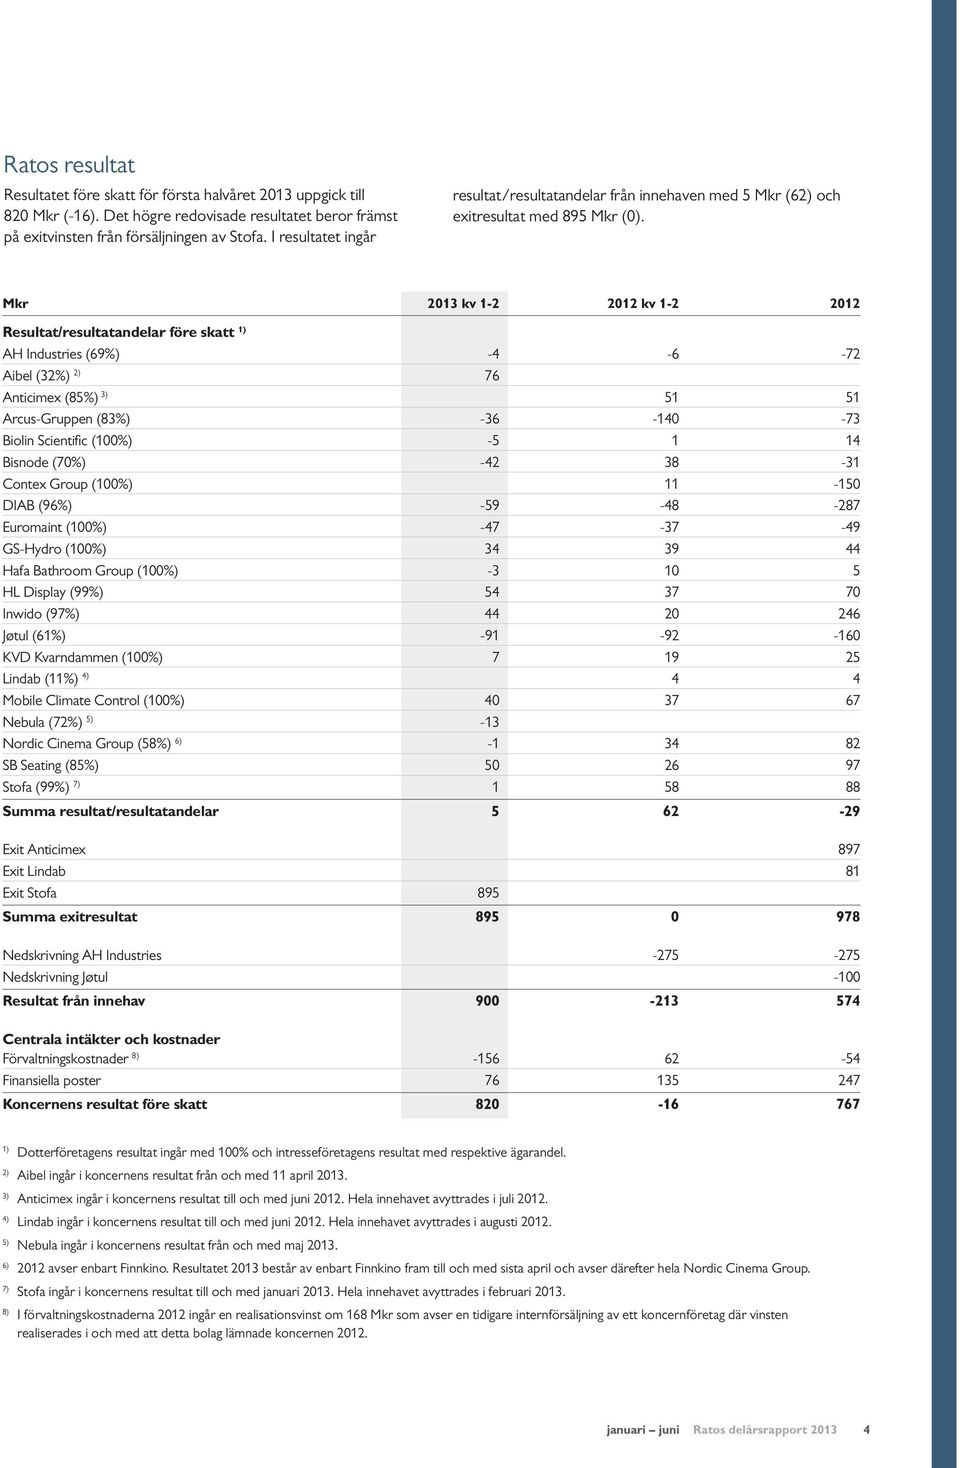 Mkr 2013 kv 1-2 2012 kv 1-2 2012 Resultat/resultatandelar före skatt 1) AH Industries (69%) -4-6 -72 Aibel (32%) 2) 76 Anticimex (85%) 3) 51 51 Arcus-Gruppen (83%) -36-140 -73 Biolin Scientific